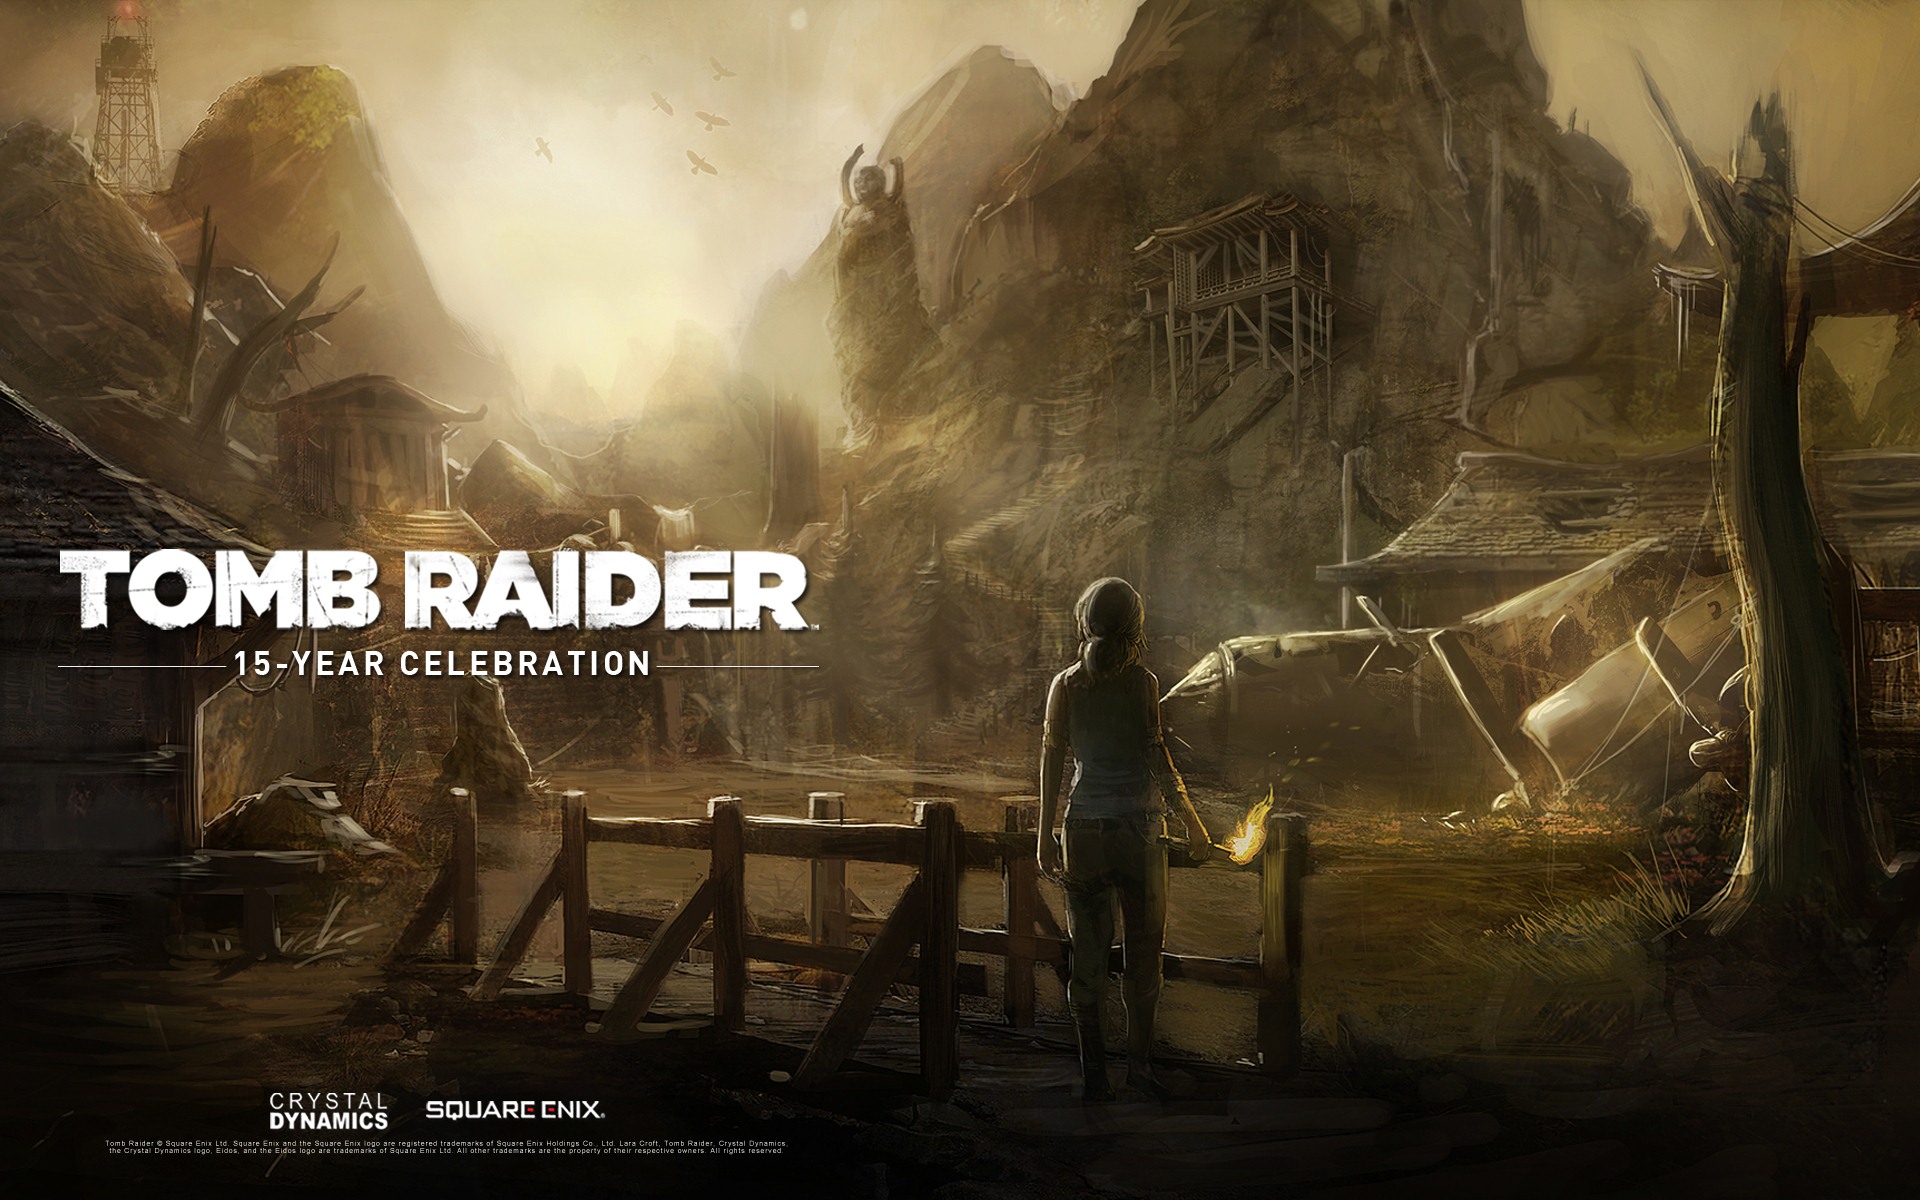 Tomb Raider 15-Year Celebration 古墓丽影15周年纪念版 高清壁纸3 - 1920x1200